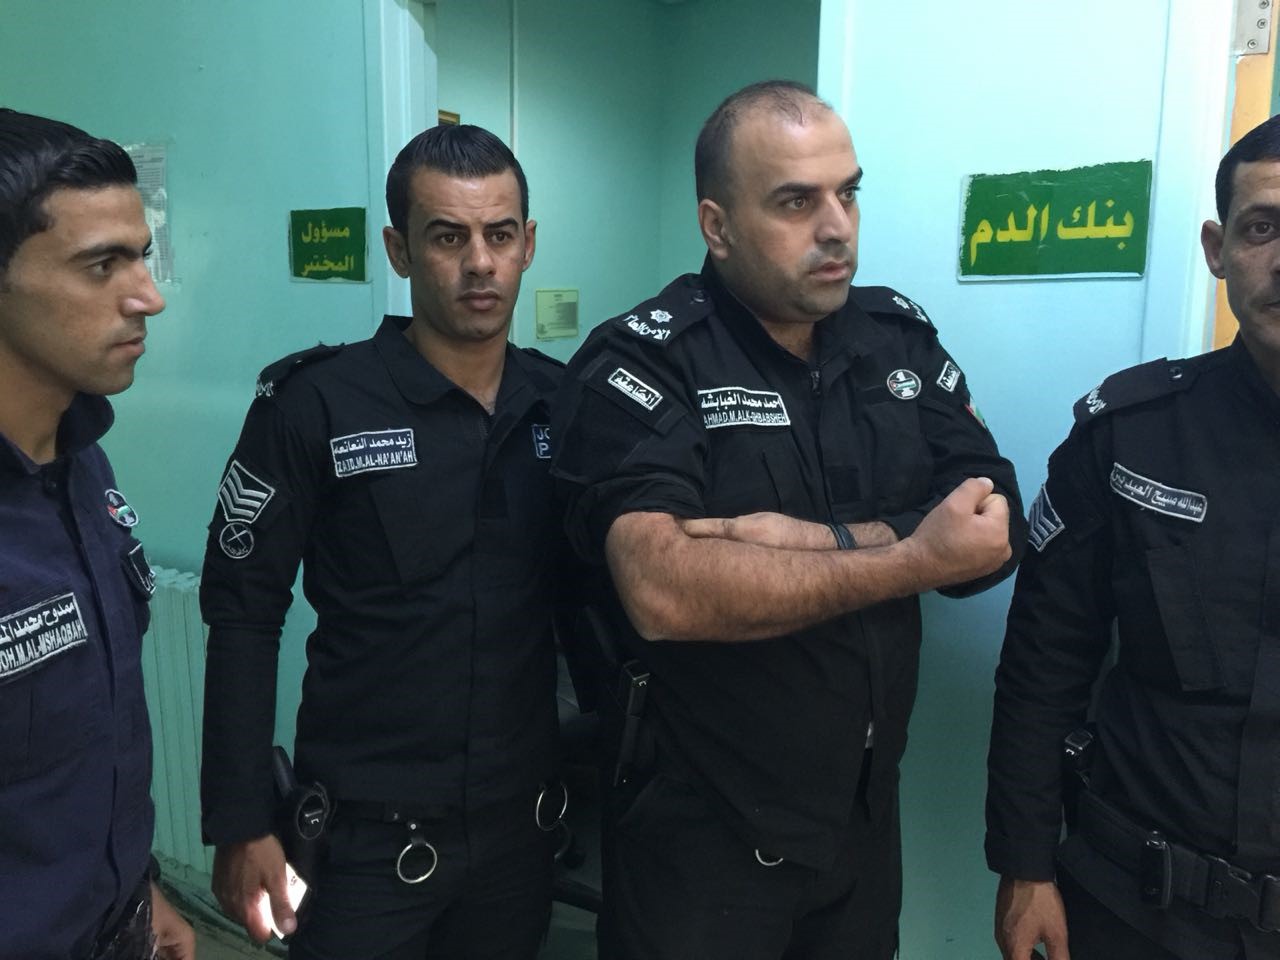  نشامى شرطة الكرك يشمرون عن ساعدهم للتبرع بالدم 